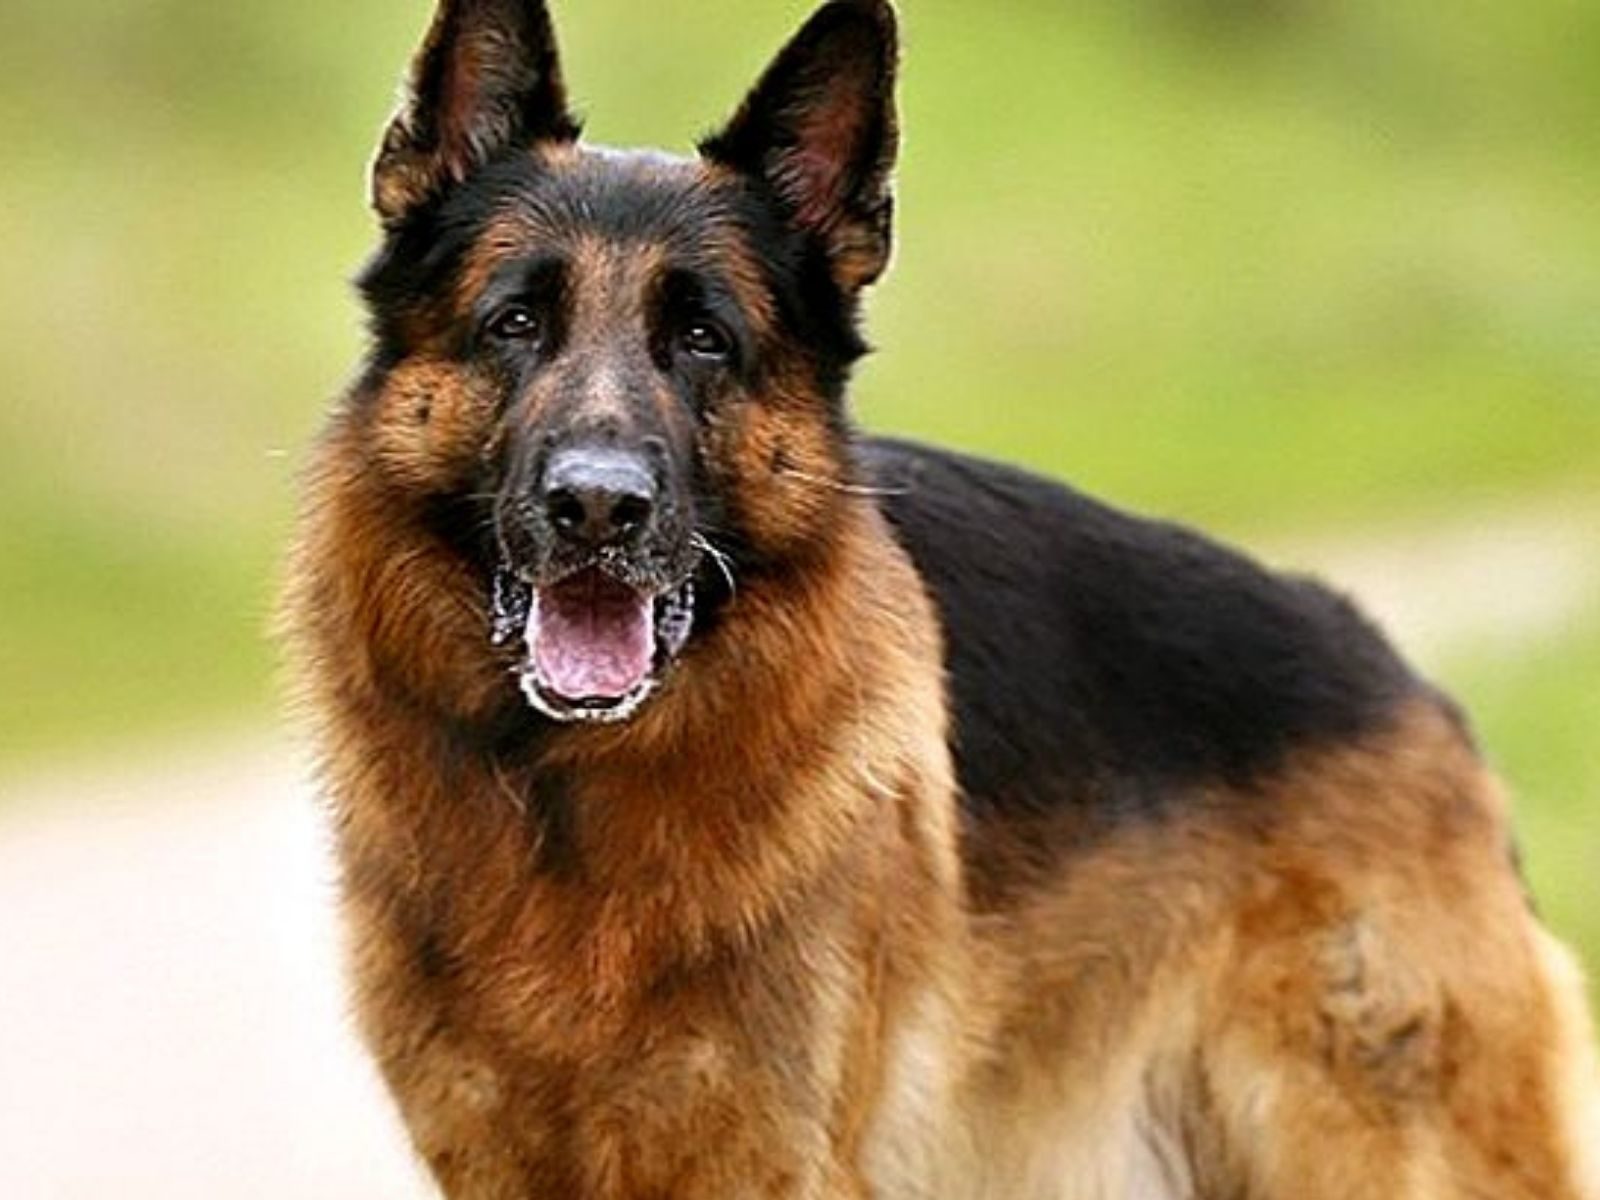 German Shepherd Dog robbed by criminals in bulandshahr upns - बुलंदशहर: घर  में घुसकर जर्मन शेफर्ड नस्ल के कुत्ते की लूट, पिस्टल लहराते फरार हुए बदमाश  – News18 हिंदी